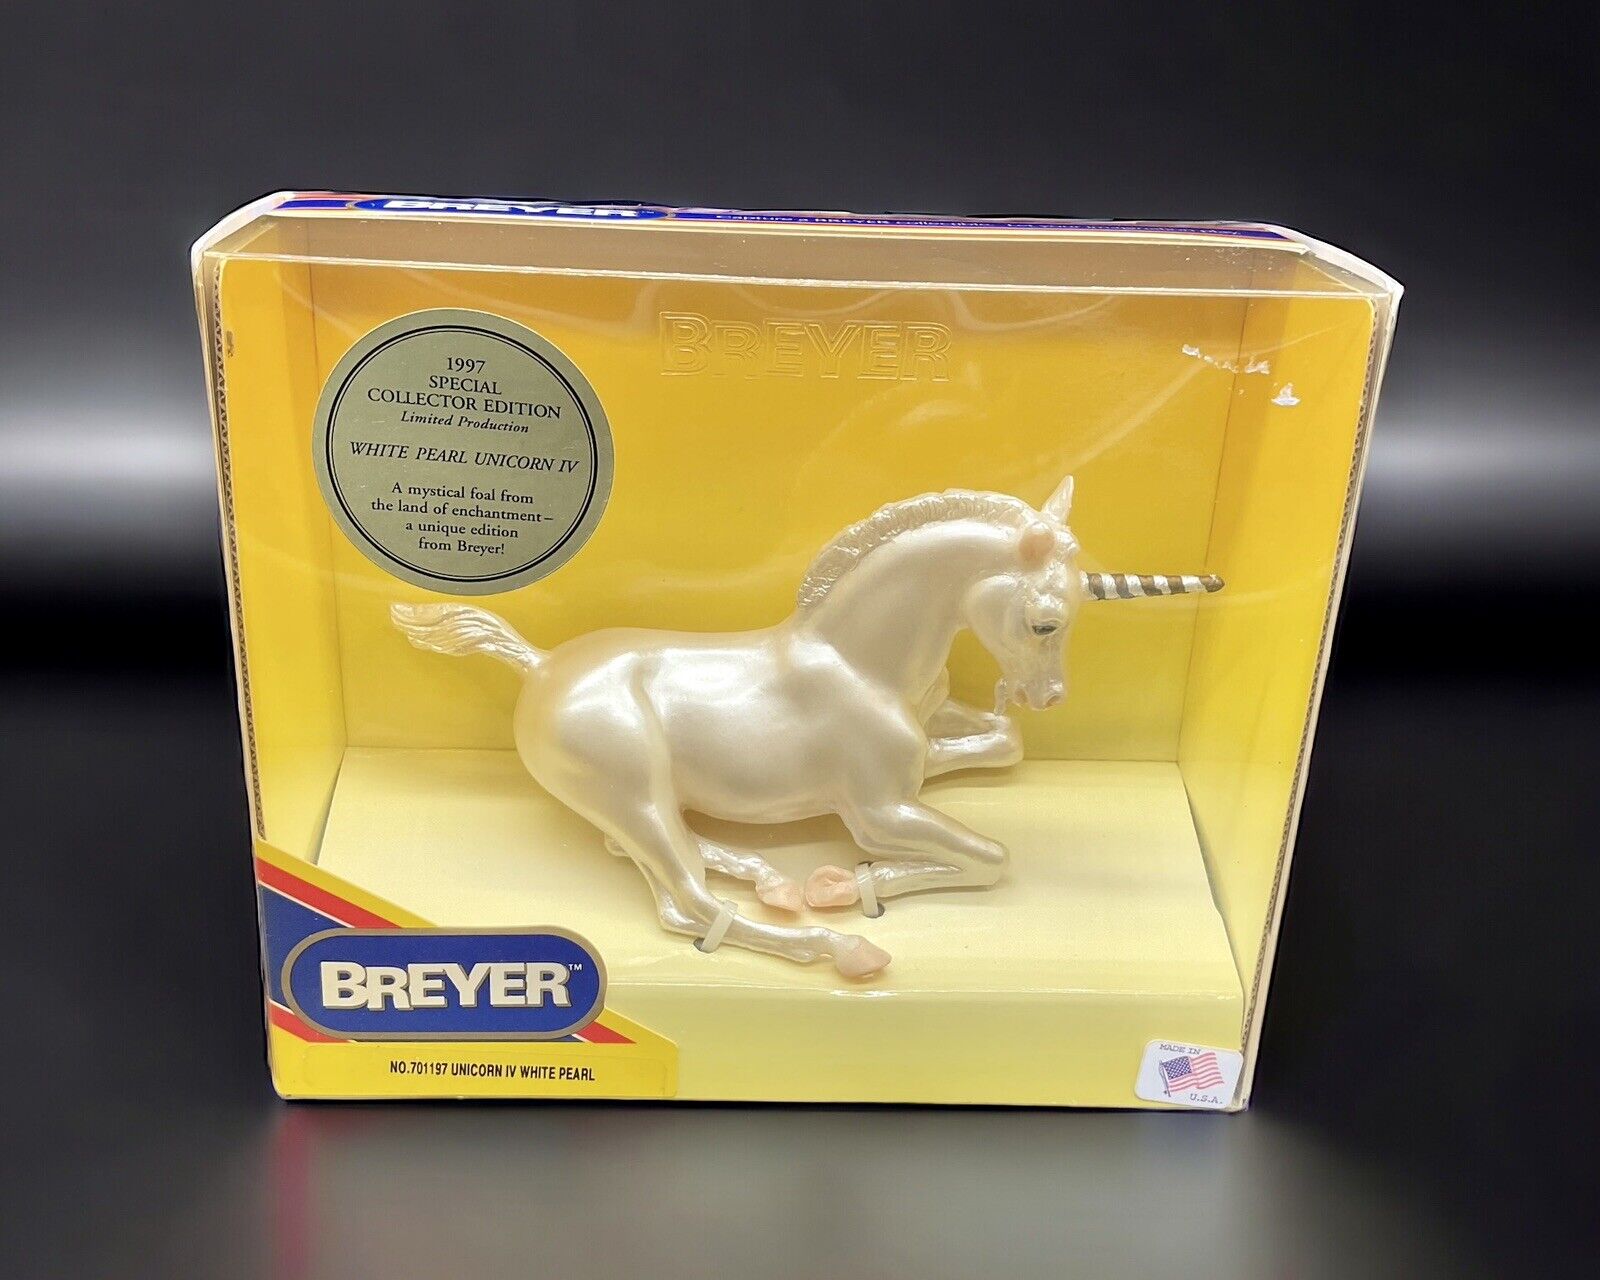 Breyer 1997 Special Collector Edition White Pearl Unicorn IV in Original Box NIB